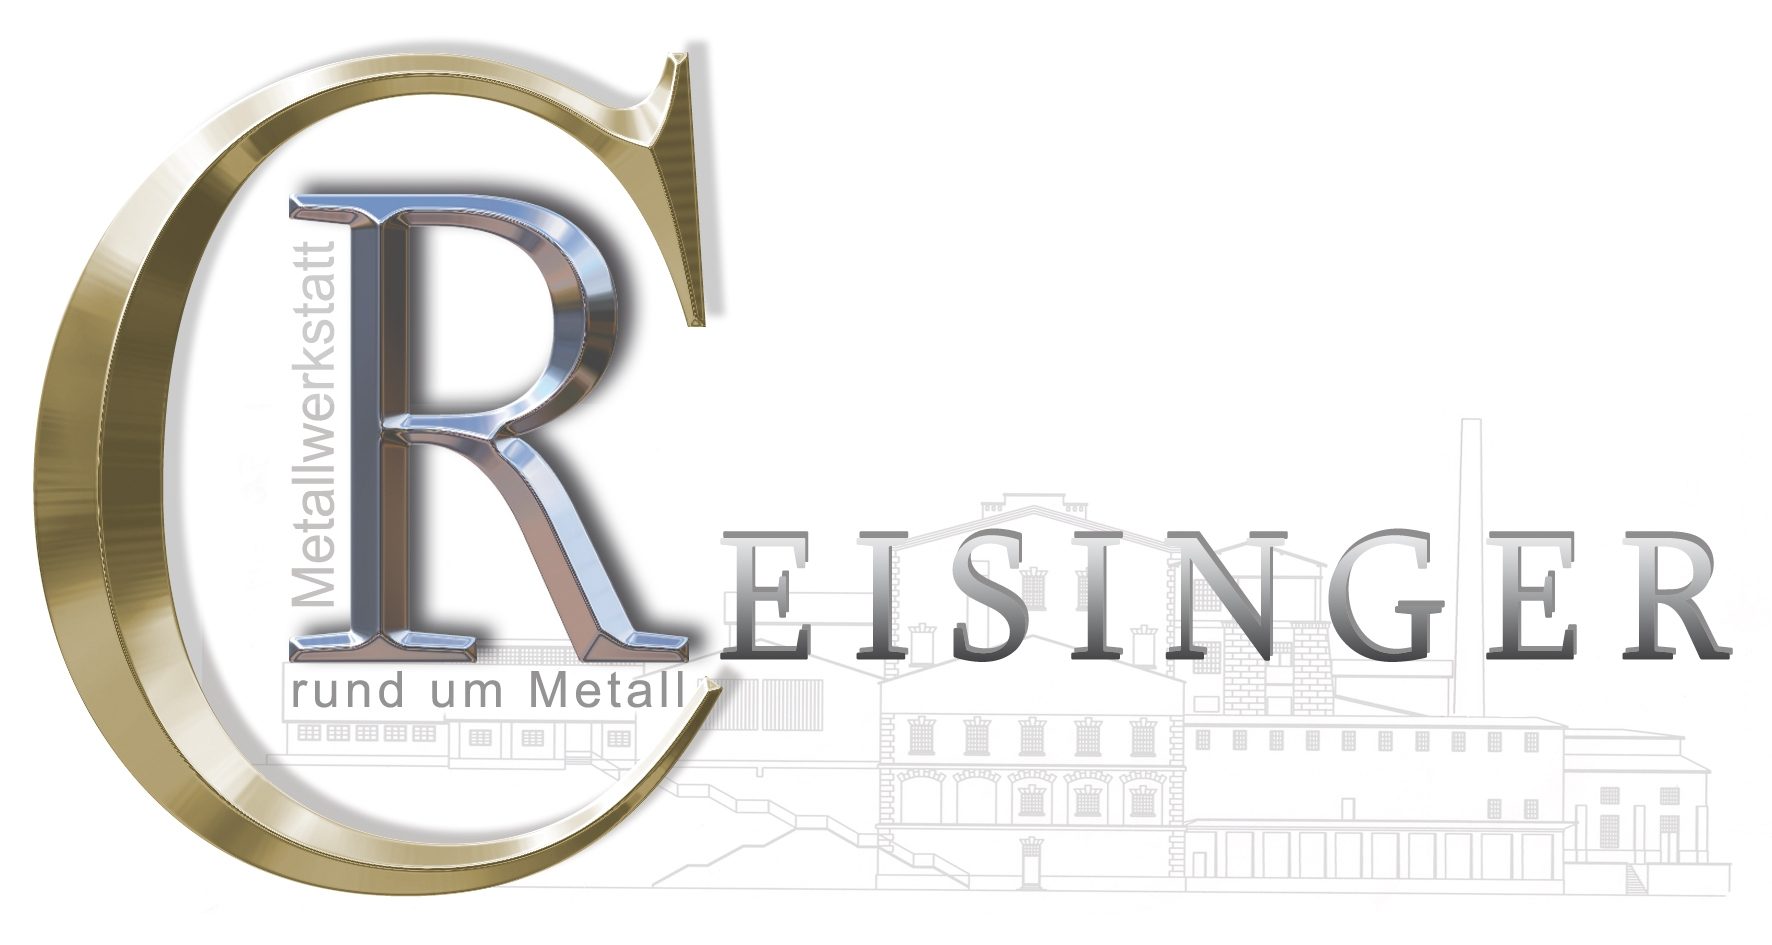 Metallwerkstatt C. Reisinger